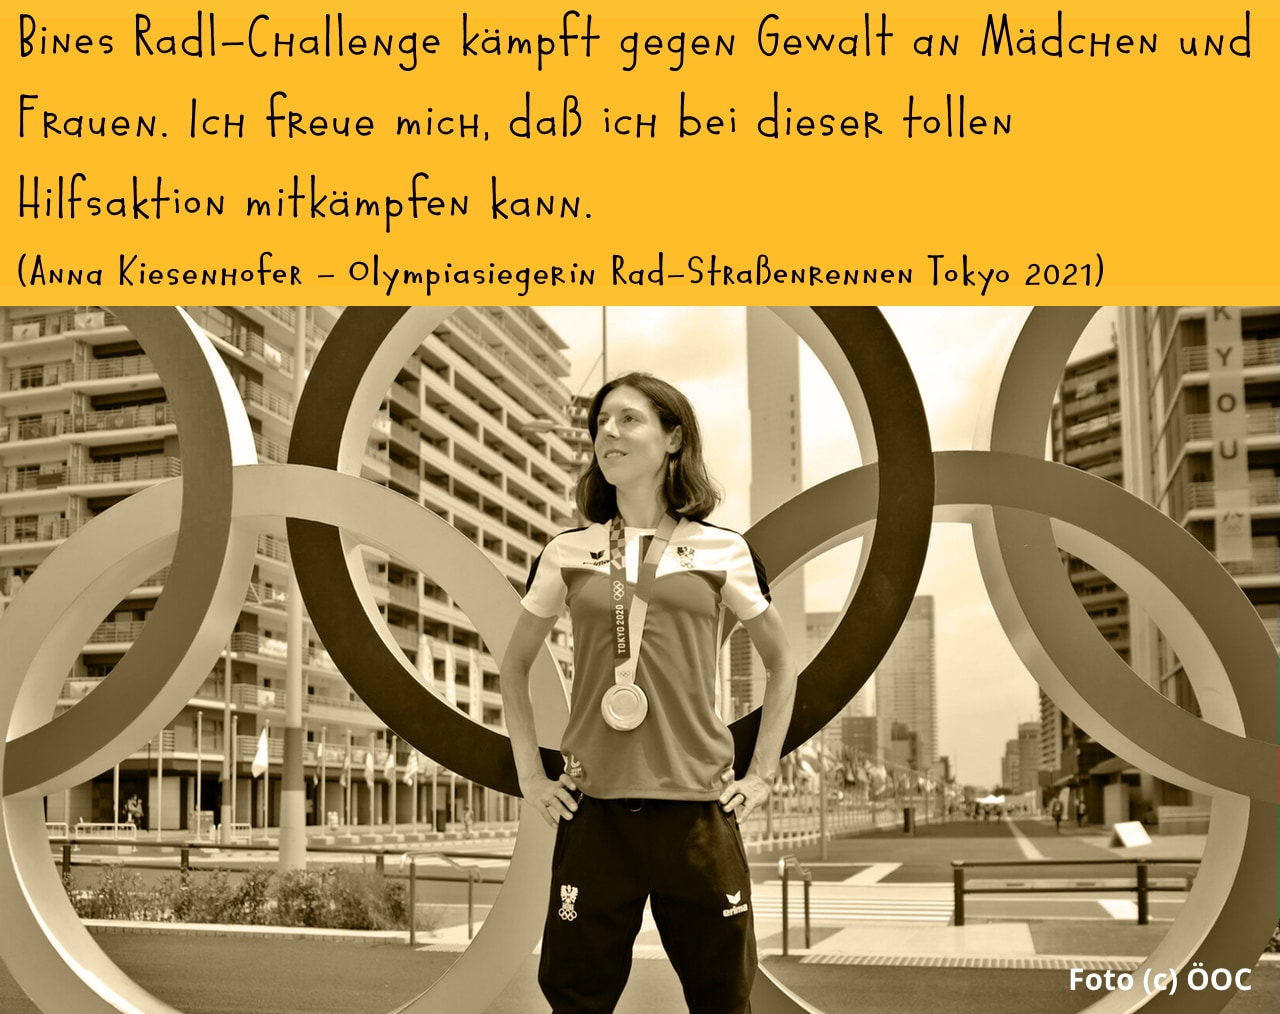 Olympiasiegerin Anna Kiesenhofer unterstützt Bines Radl-Challenge